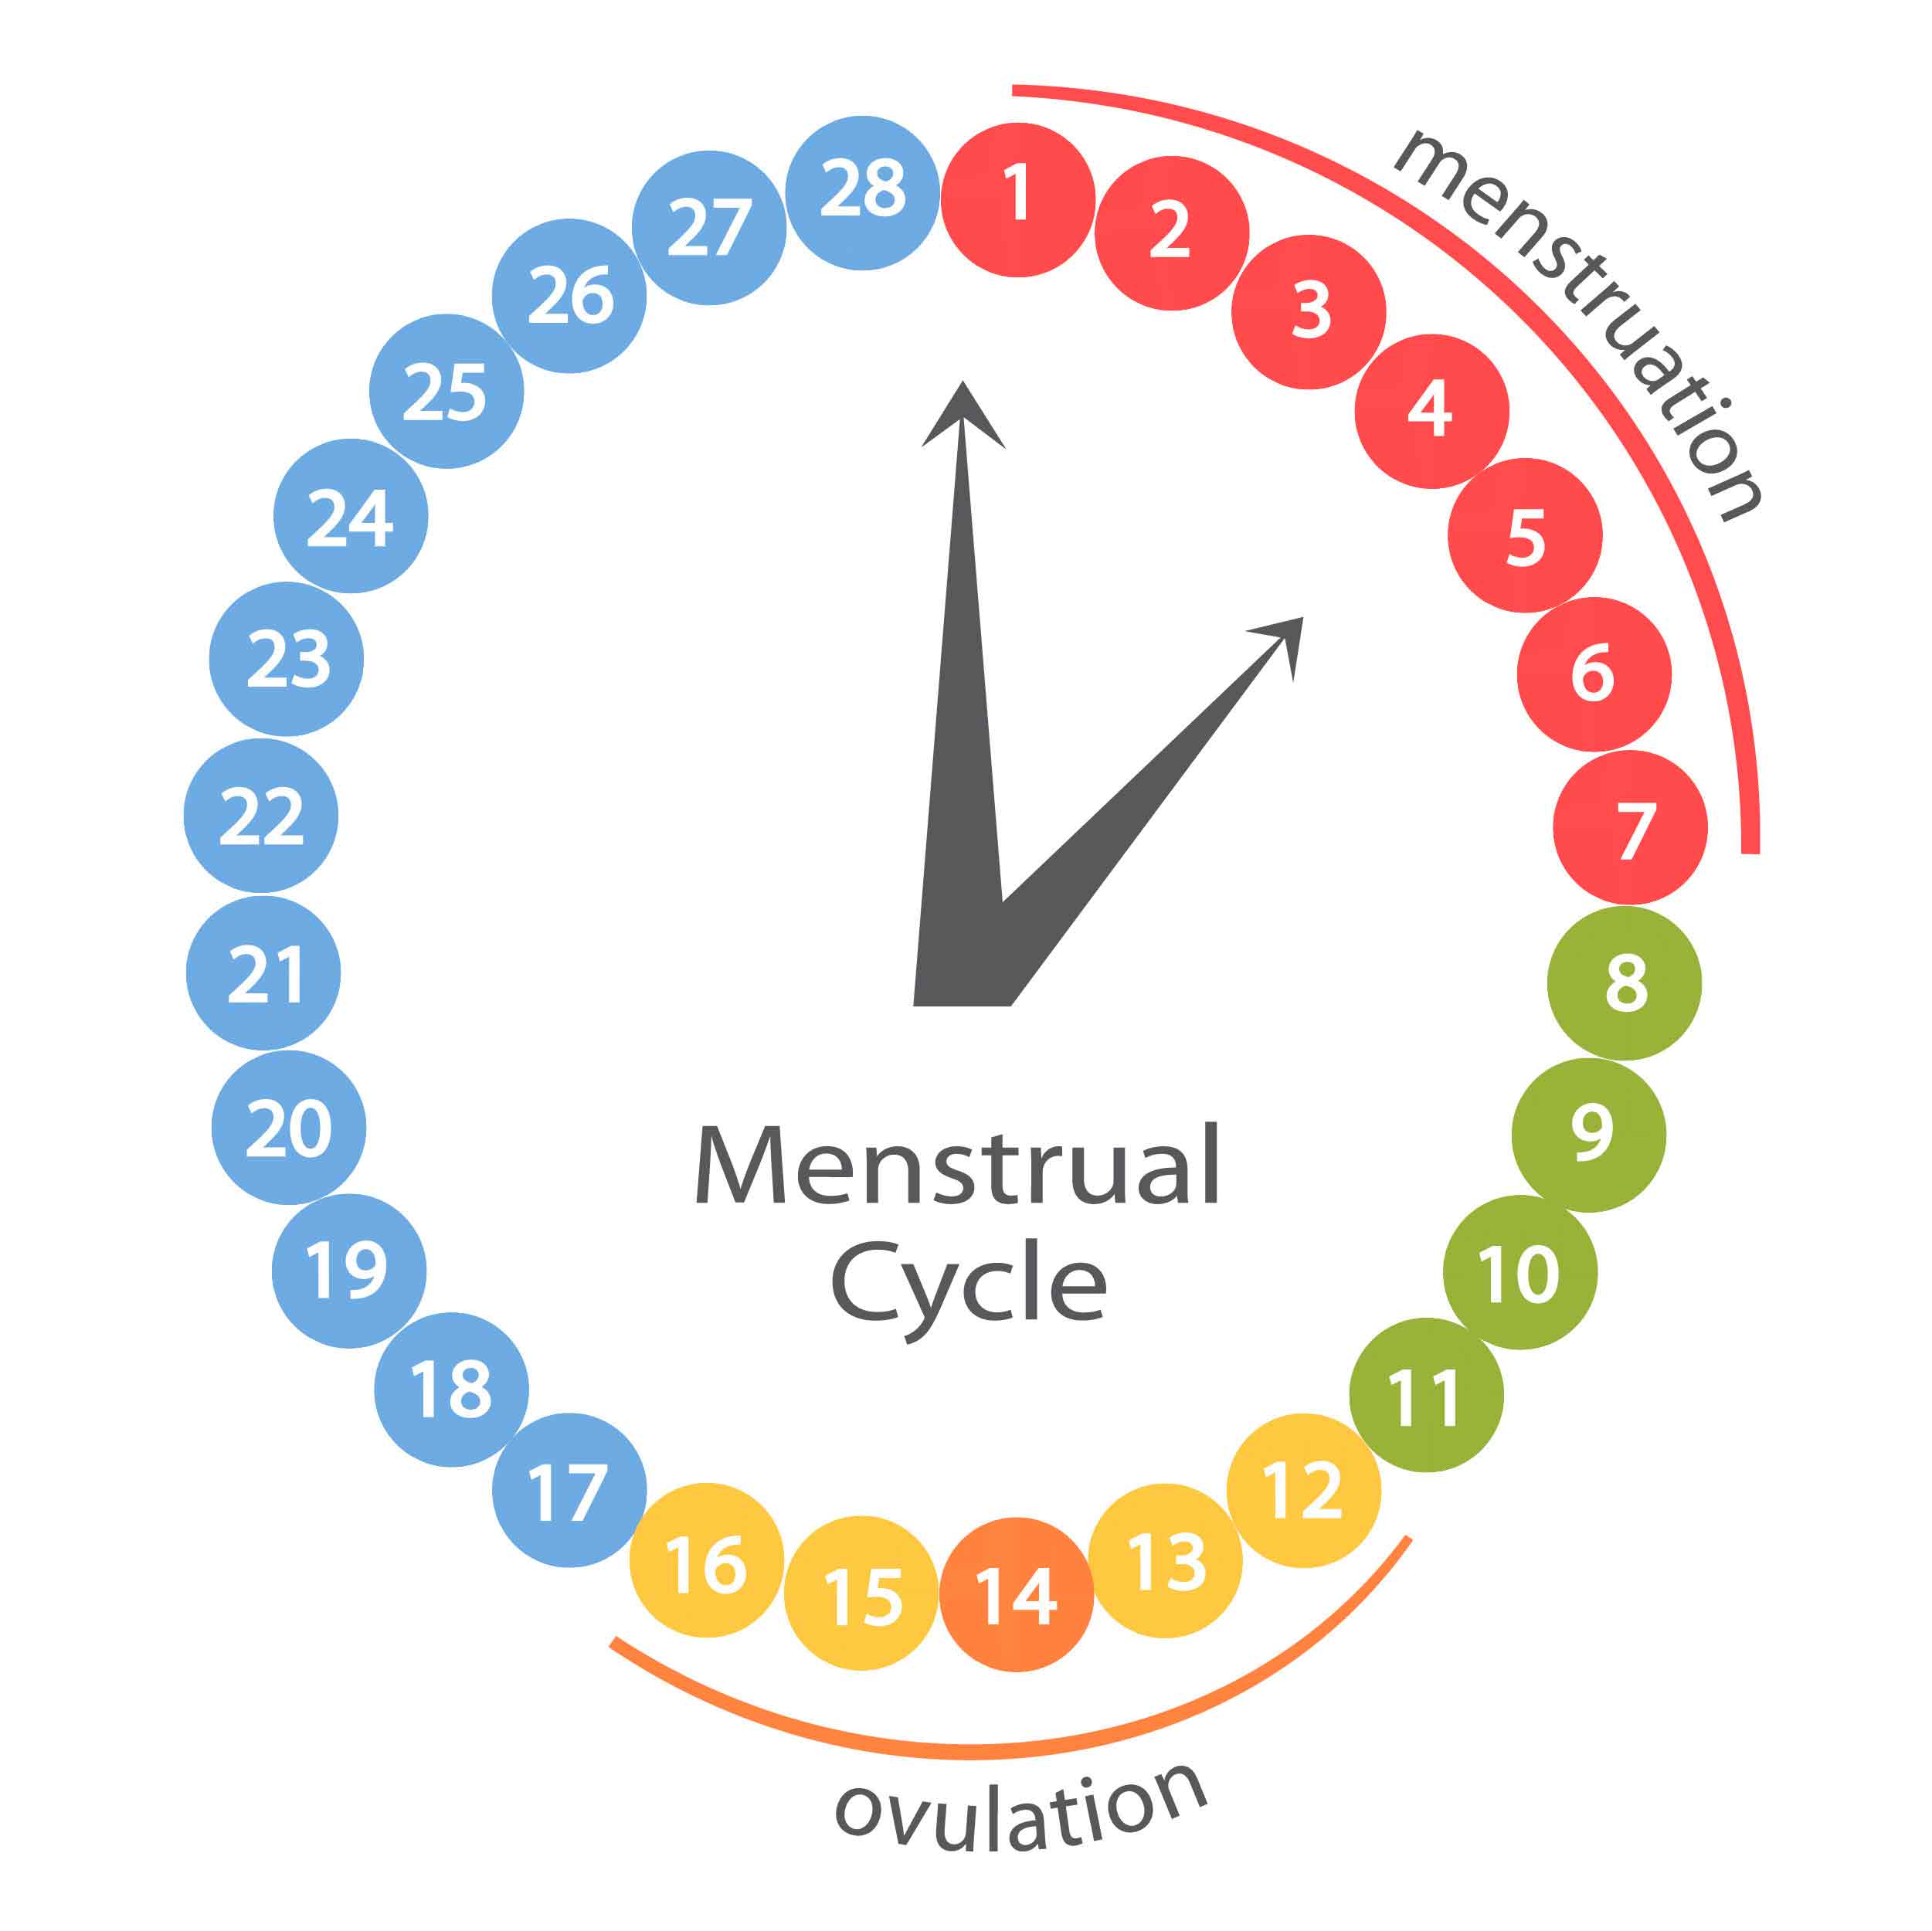 Незащищенный акт во время овуляции. Менструальный цикл. Менструальныменструальный Уикд. Циклцикл менструальный. Цикл менструационного цикла.